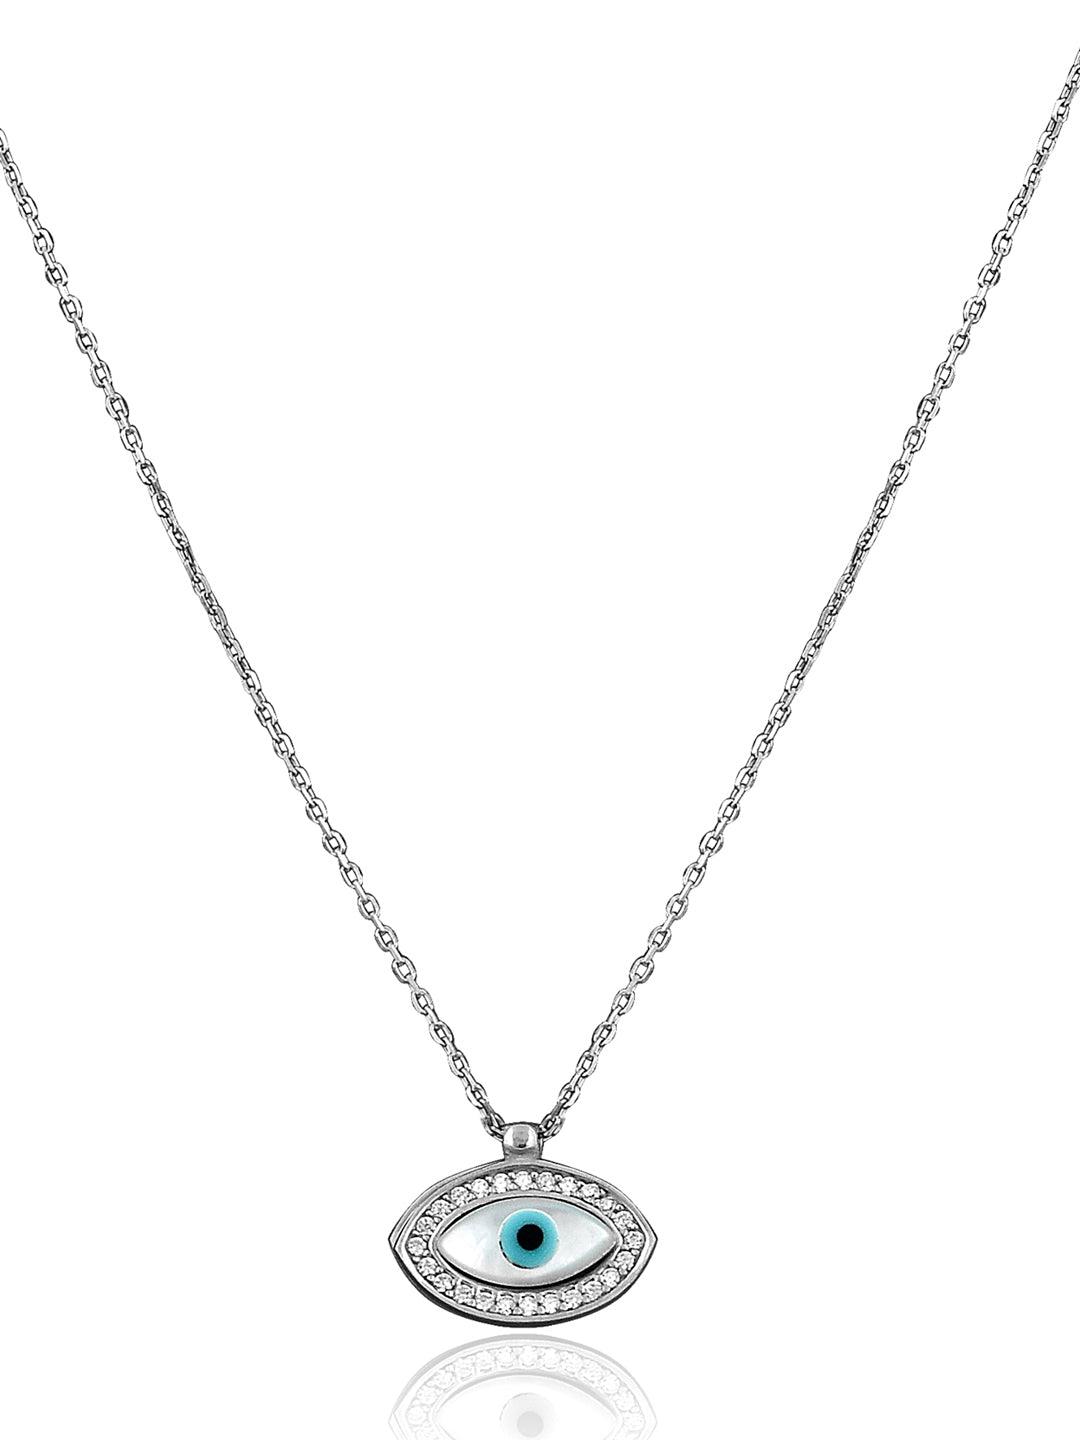 Evil Eye Necklace 9K White Gold - Greek Handmade Jewelry, Lucky Necklace |  eBay